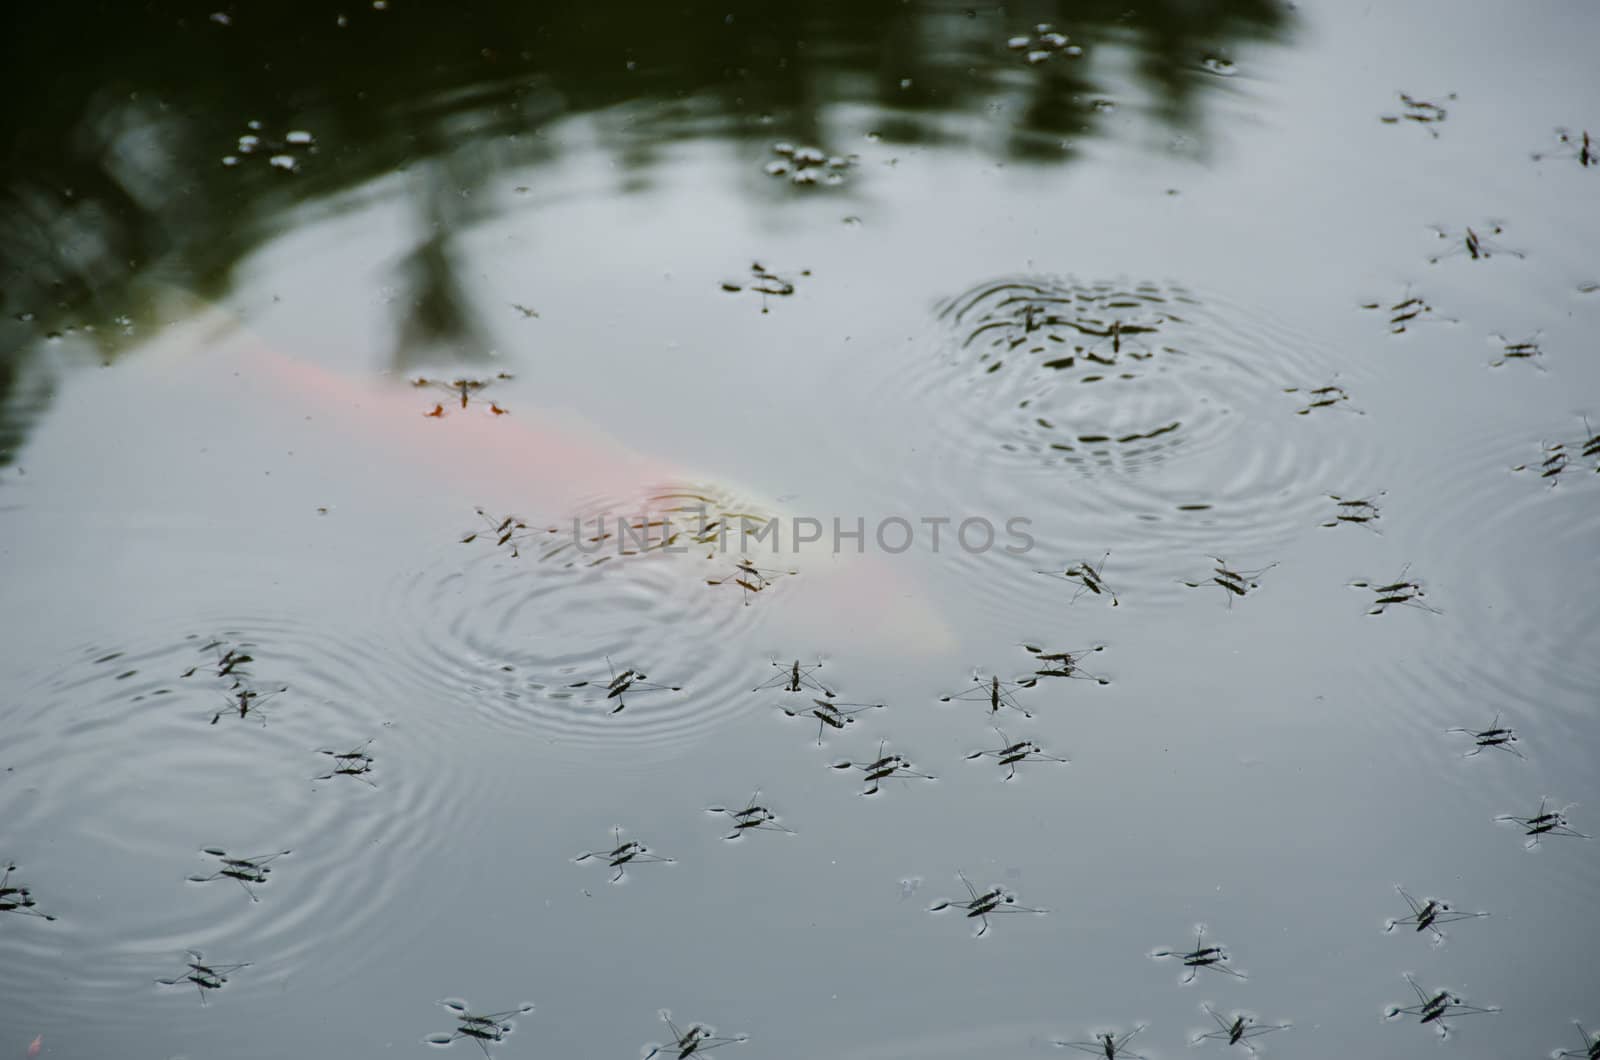 Water striders, Gerridae, on a lake in summer